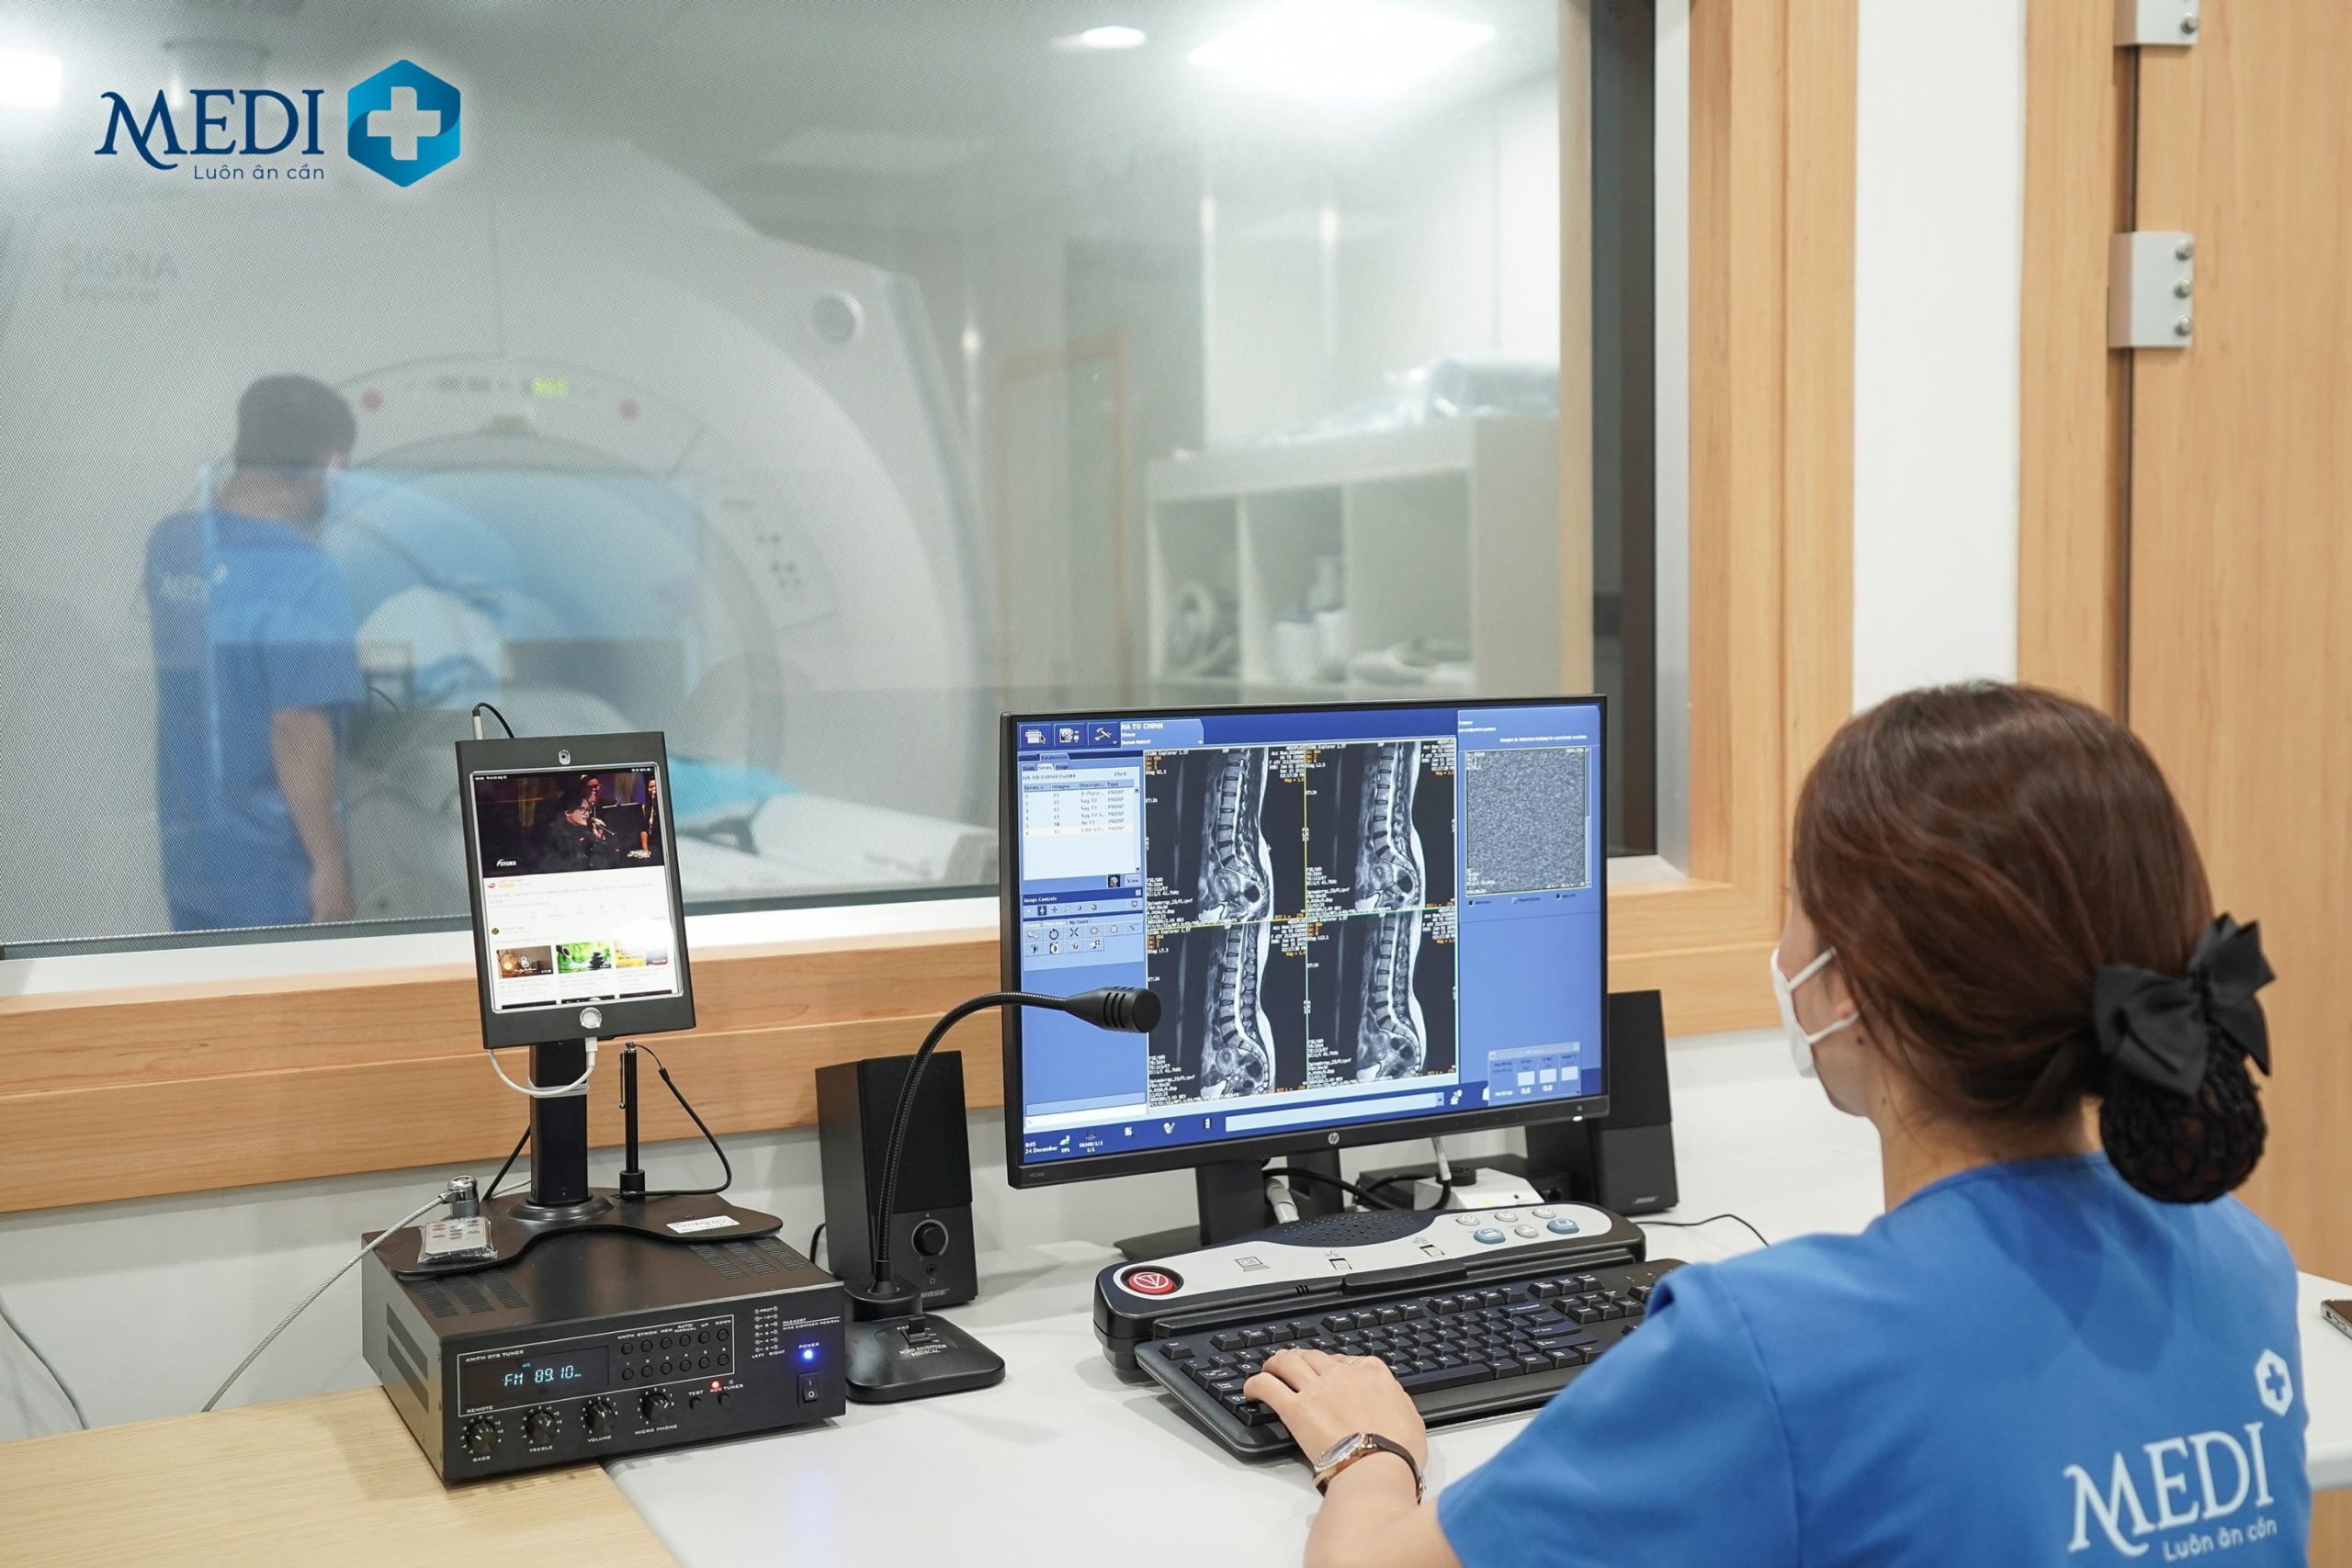 Mediplus quy tụ đội ngũ kỹ thuật viên chụp MRI chuyên môn cao, tác phong chuyên nghiệp luôn tận tình hỗ trợ khách hàng